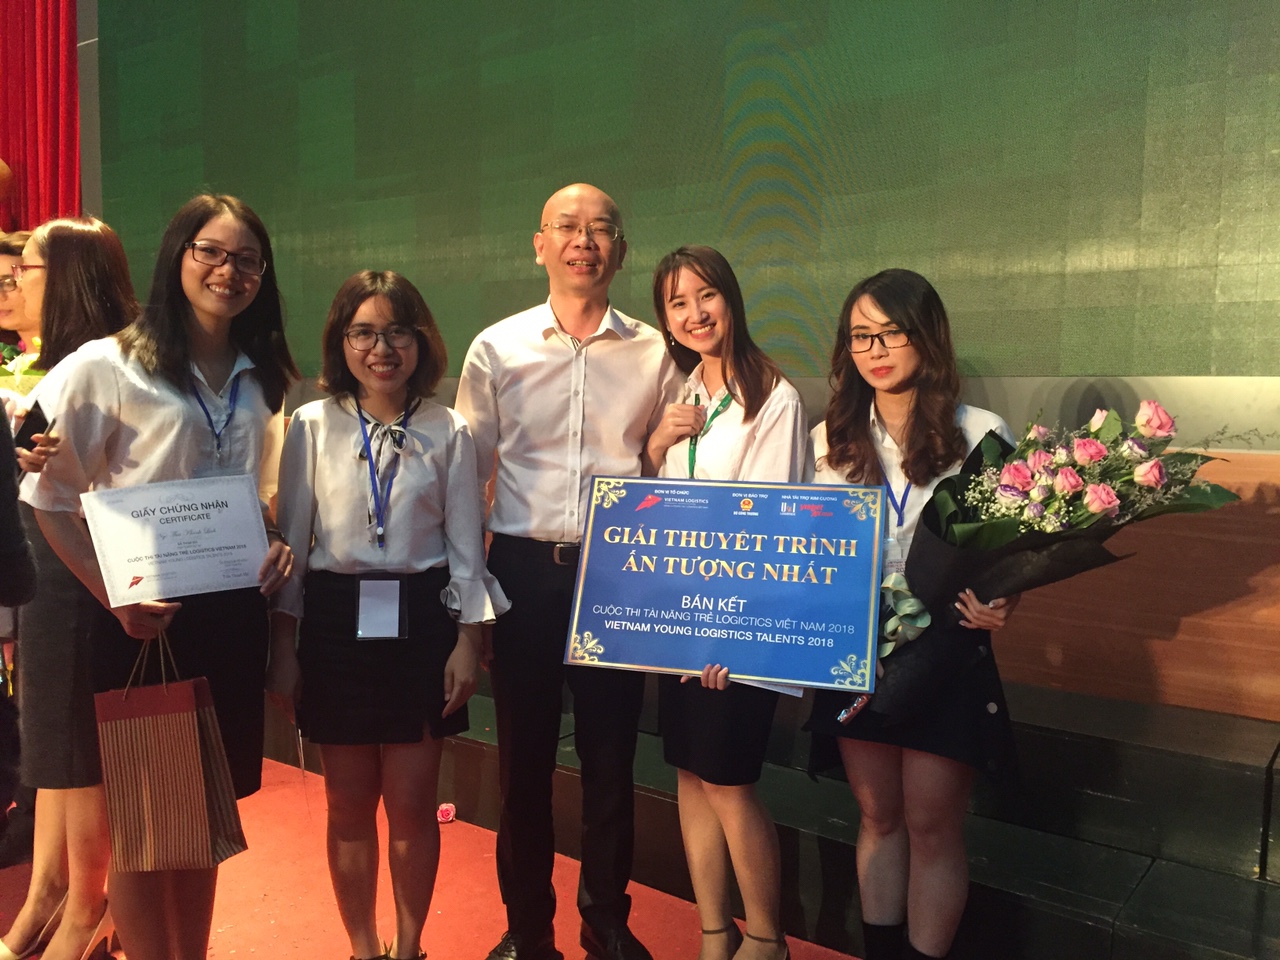 Đội thi chụp ảnh lưu niệm cùng ông Trần Thanh Hải, Phó cục trưởng Cục Xuất nhập khẩu, Bộ Công thương, trưởng ban tổ chức giải